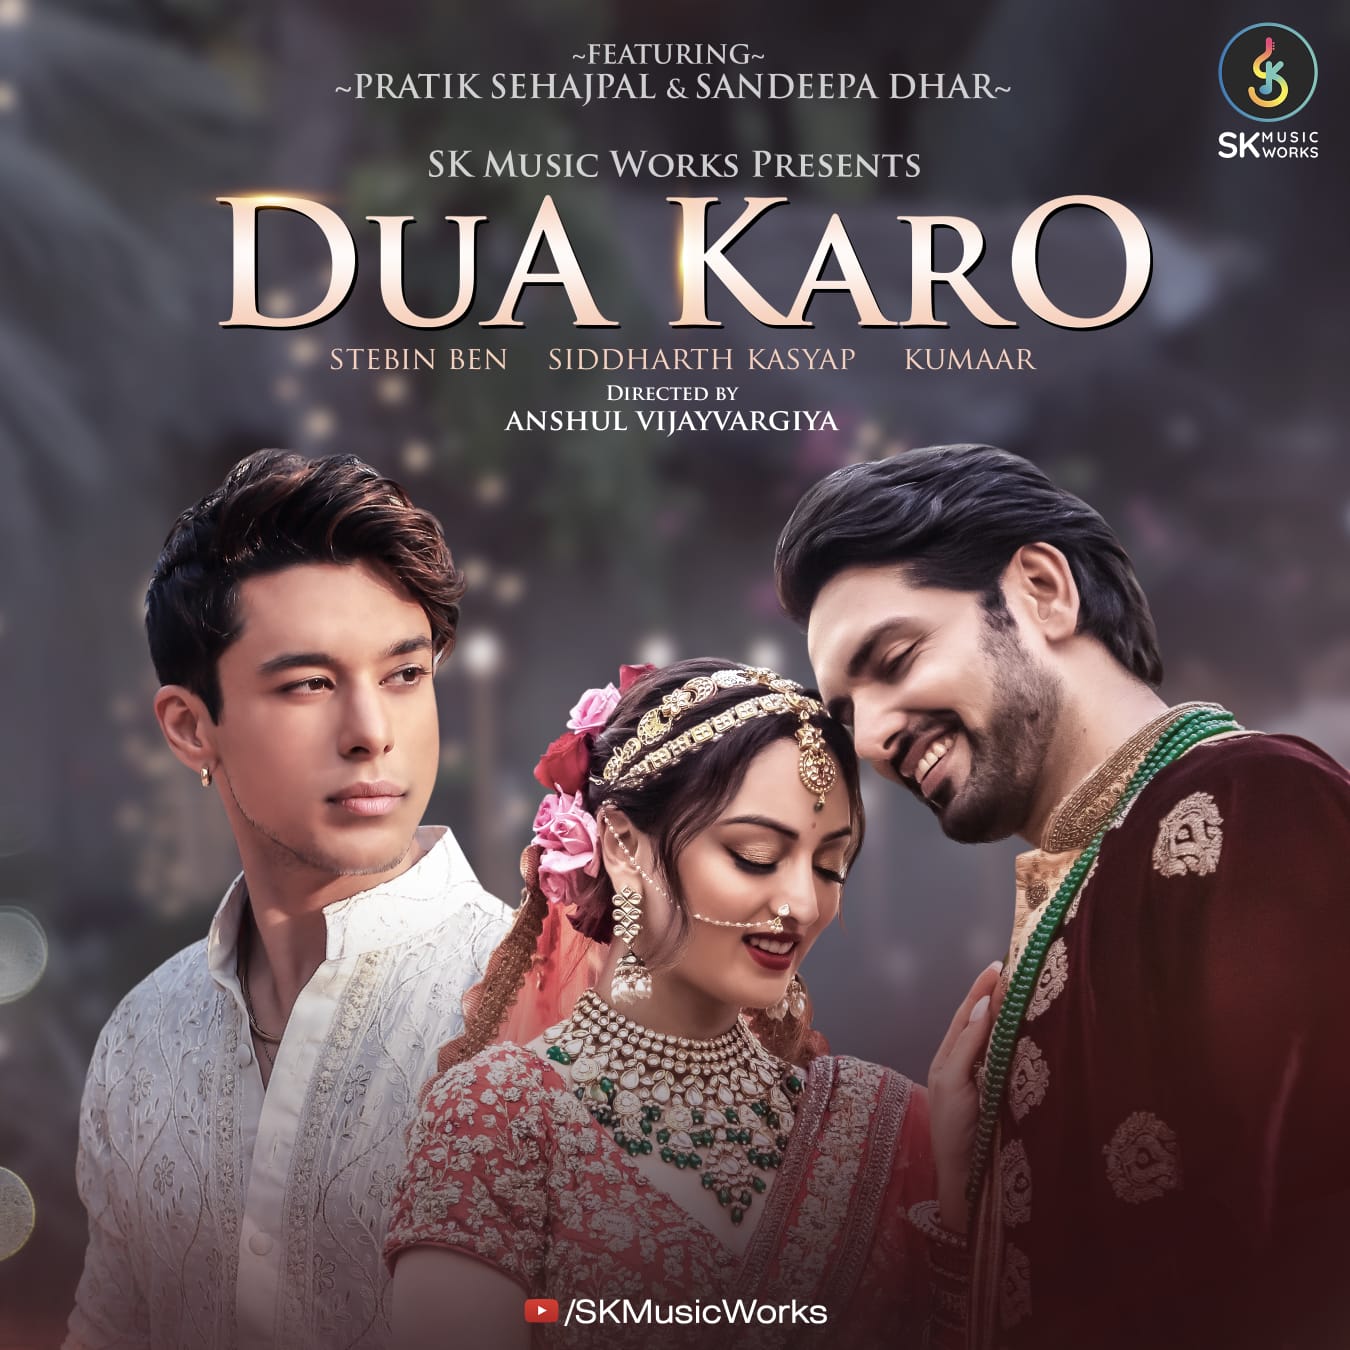 Pratik Sehajpal and Sandeepa Dhar come together for romantic single Dua Karo